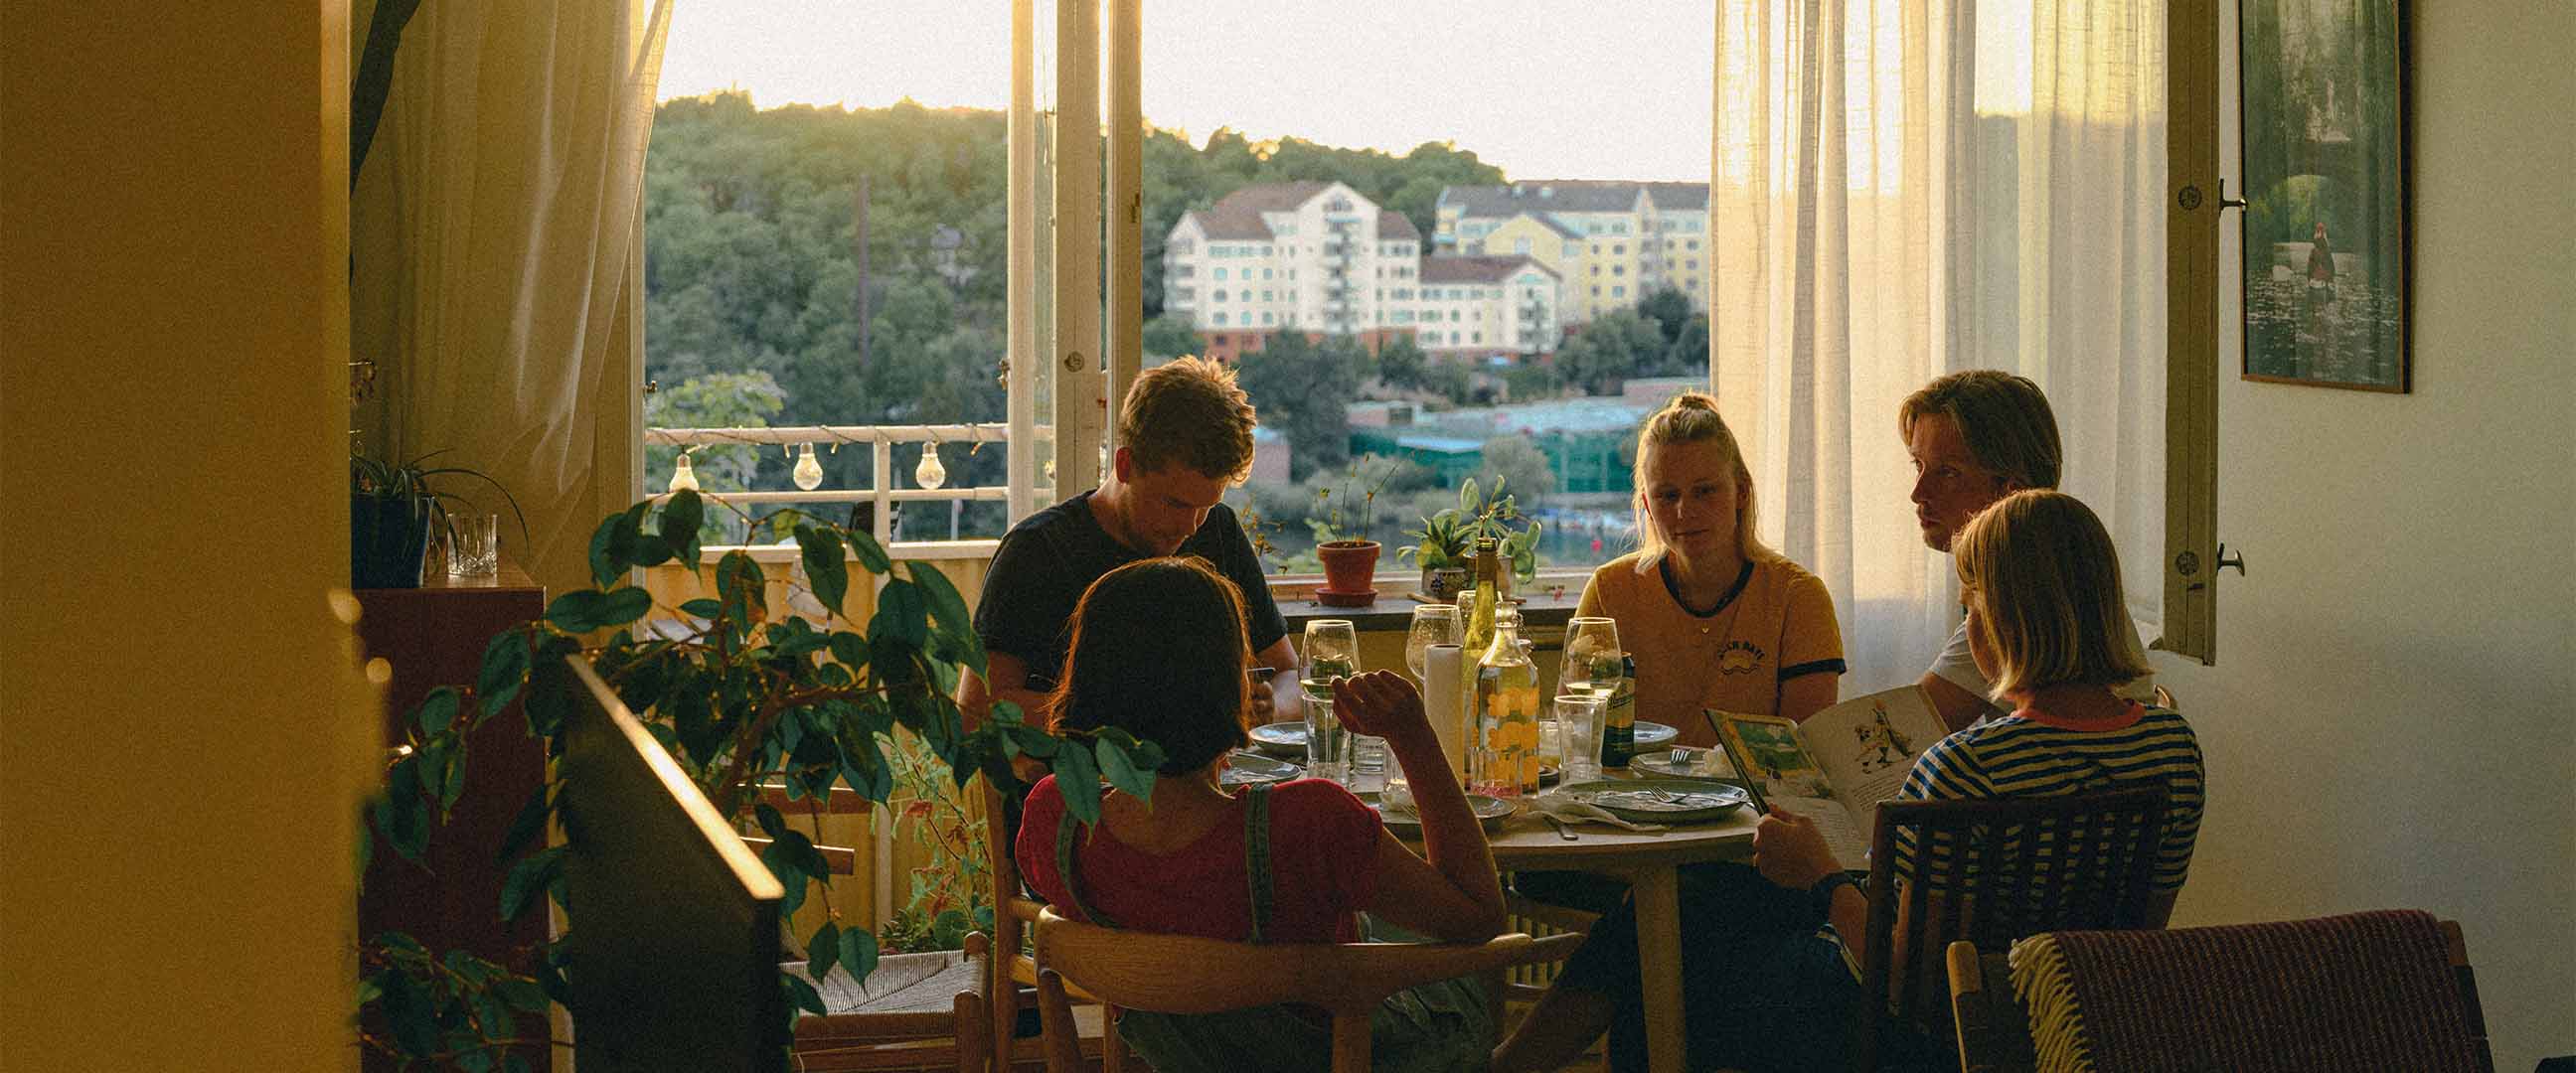 En grupp vänner som äter middag ihop hemma med balkongdörr öppen och utsikt över lägenhetshus